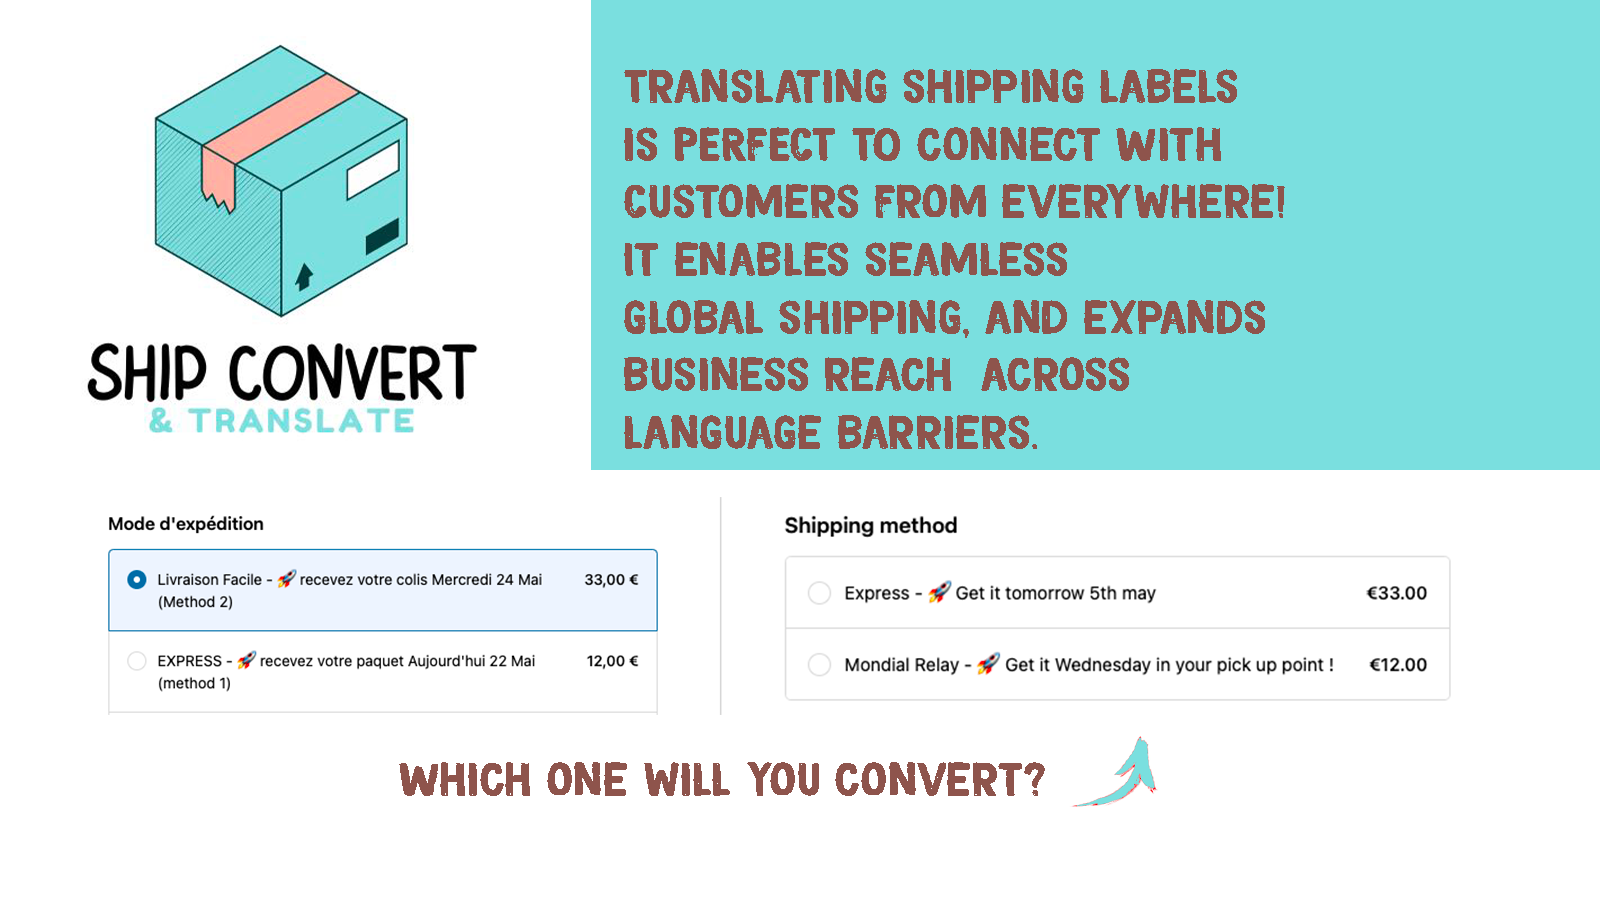 翻译运输标签与客户建立联系